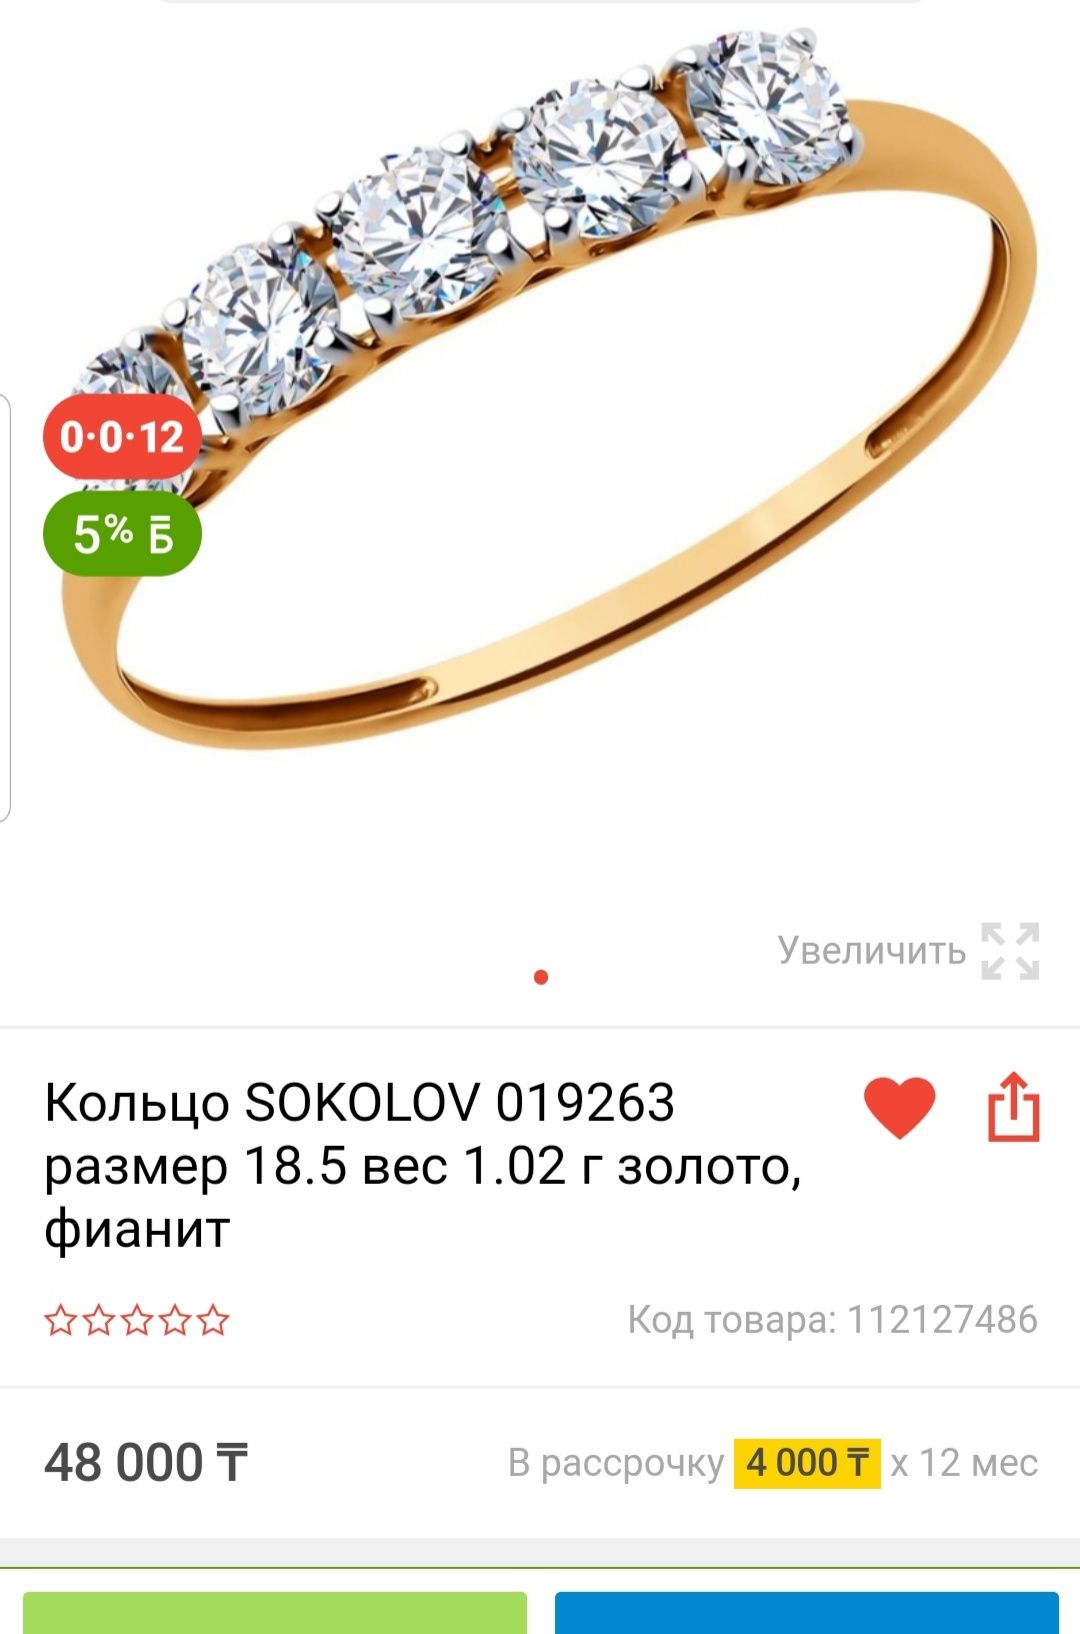 Продам золотое кольцо Соколов, в хорошем состоянии г.Астана